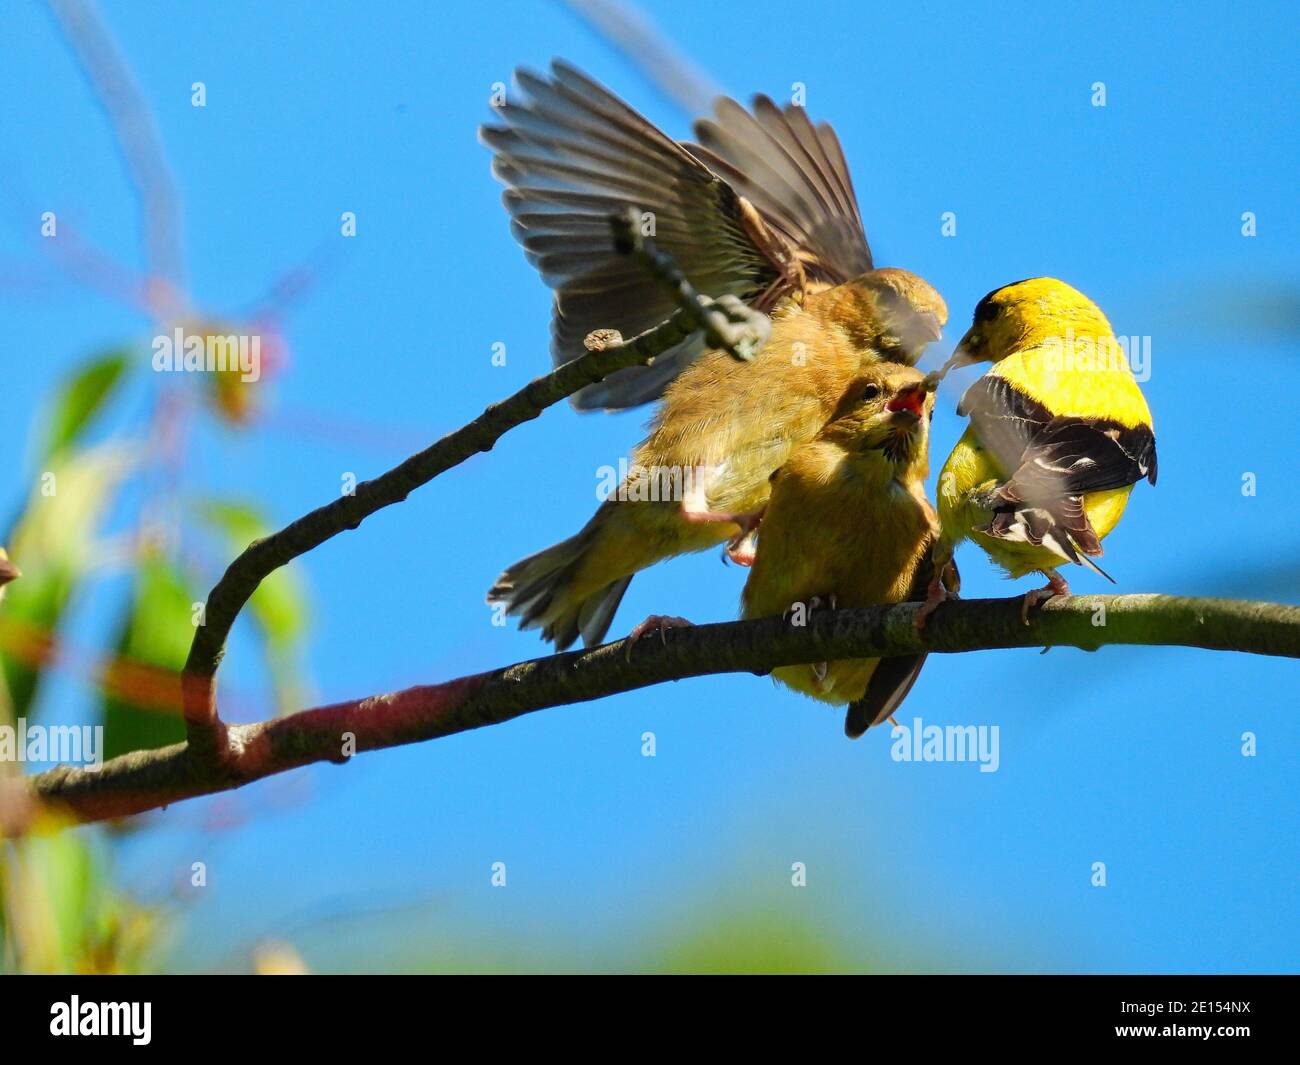 Alimentación de aves Goldfinch Bebés: Un padre de pájaro goldfinch americano intenta alimentar a dos bebés hambrientos de pinch que luchan por la comida mientras está encaramado Foto de stock